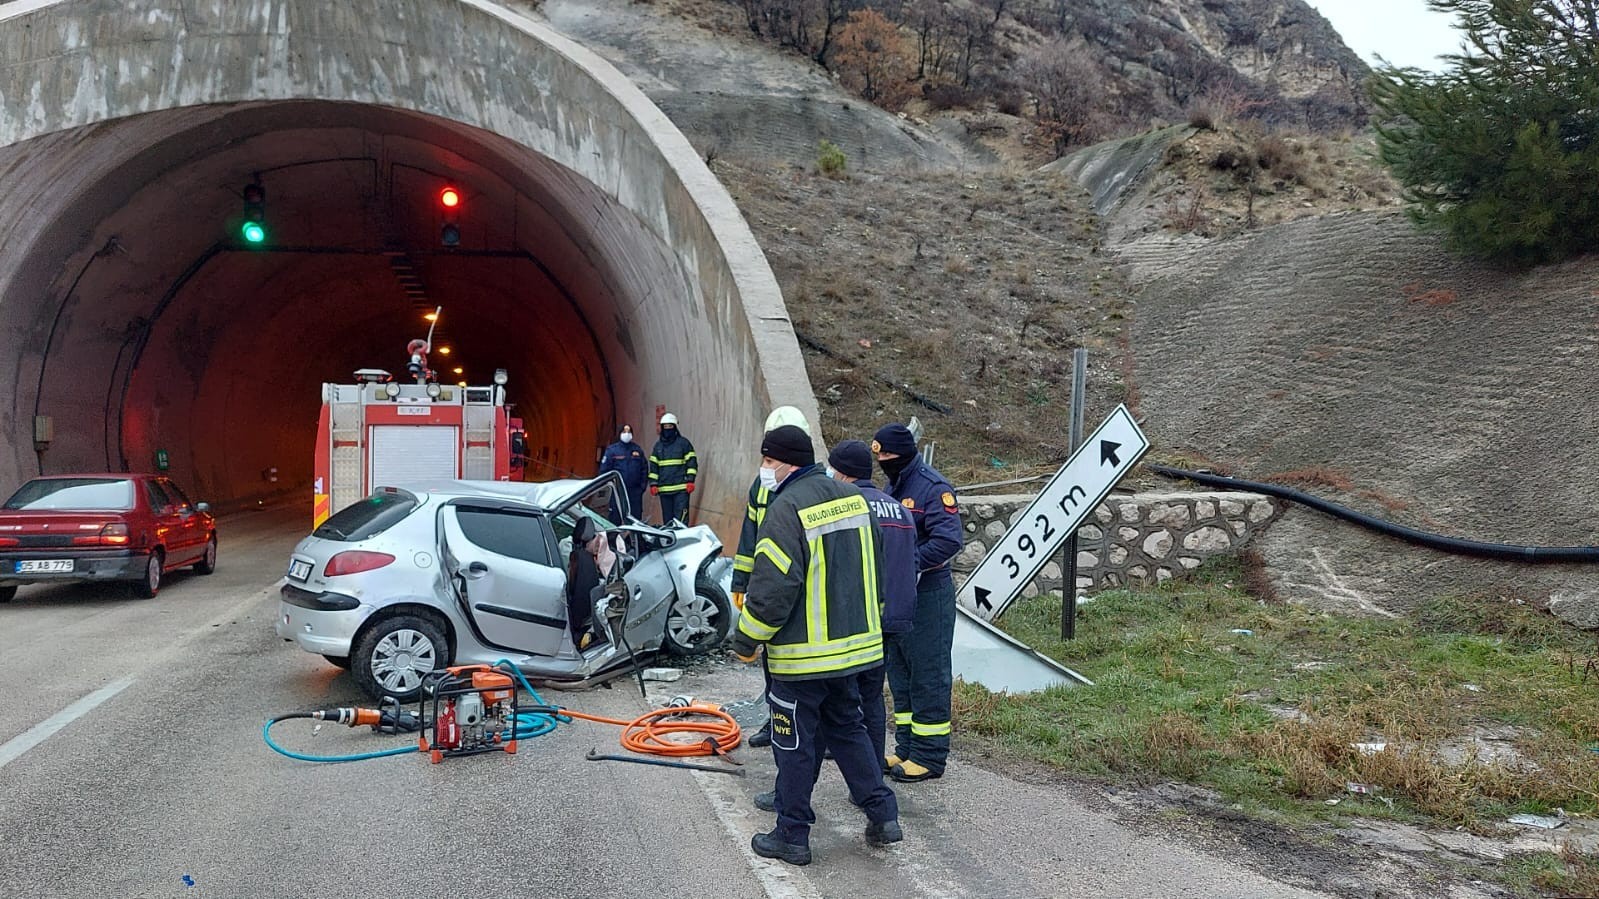 Amasya’da otomobil tünel girişine çarptı: Anne ve oğlu can verdi #amasya